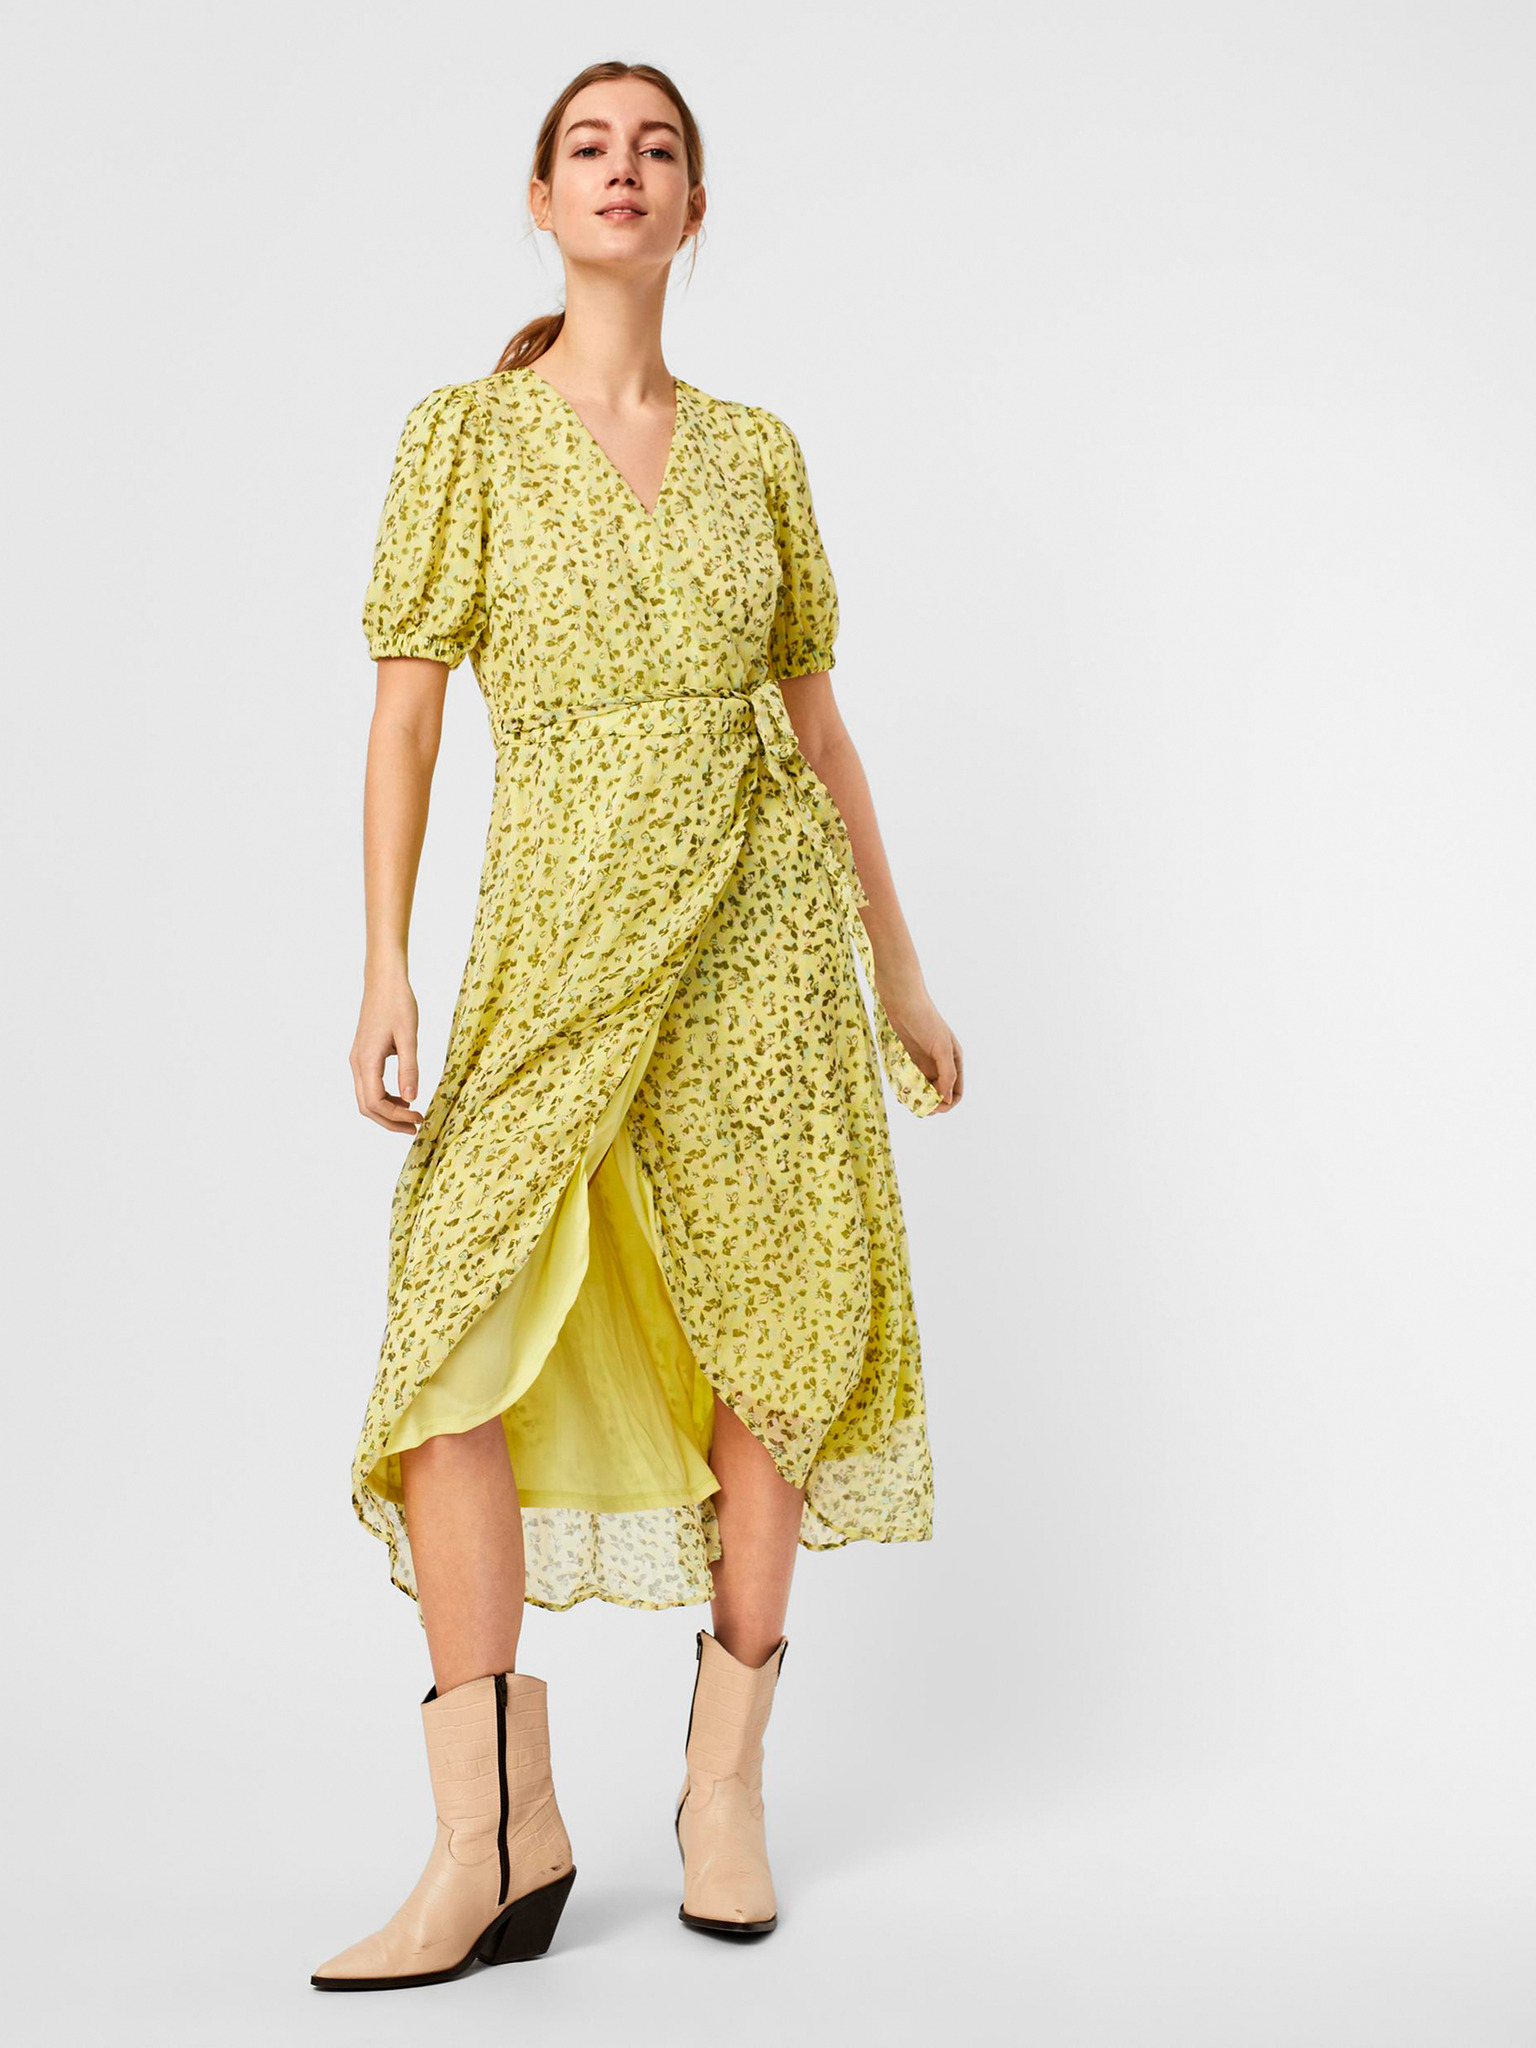 New VERO MODA Dress | Dress, Dress brands, Clothes design